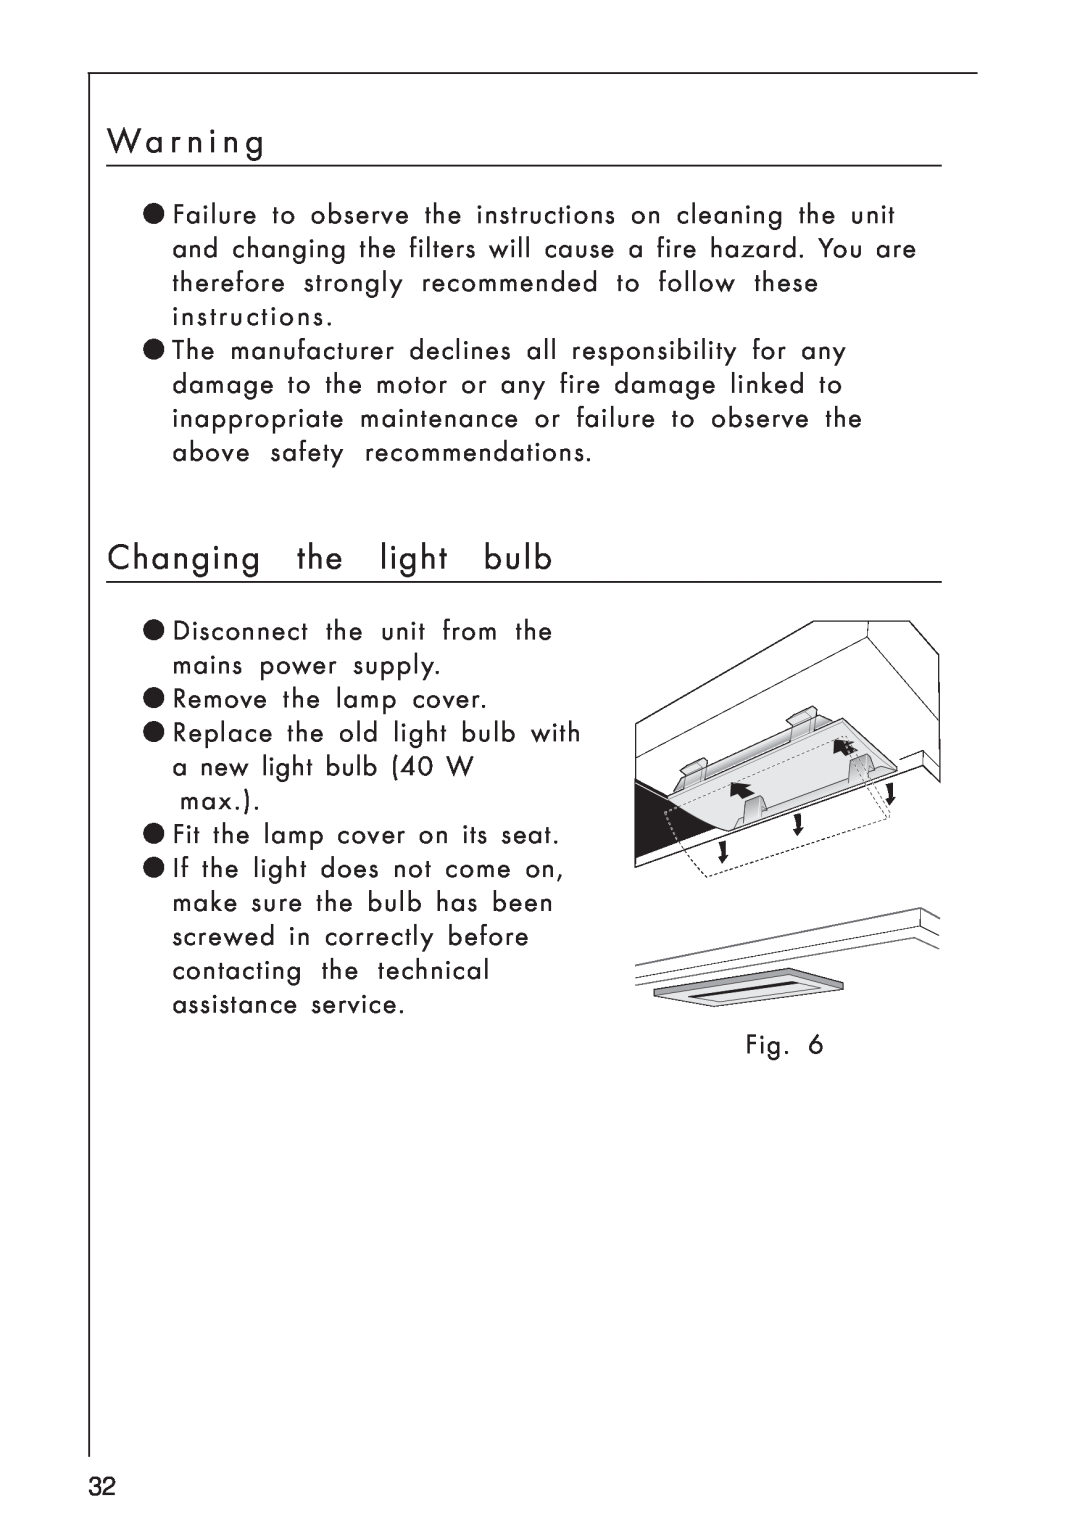 AEG 8259 S, 825 D manual W a r n i n g, Changing the light bulb 